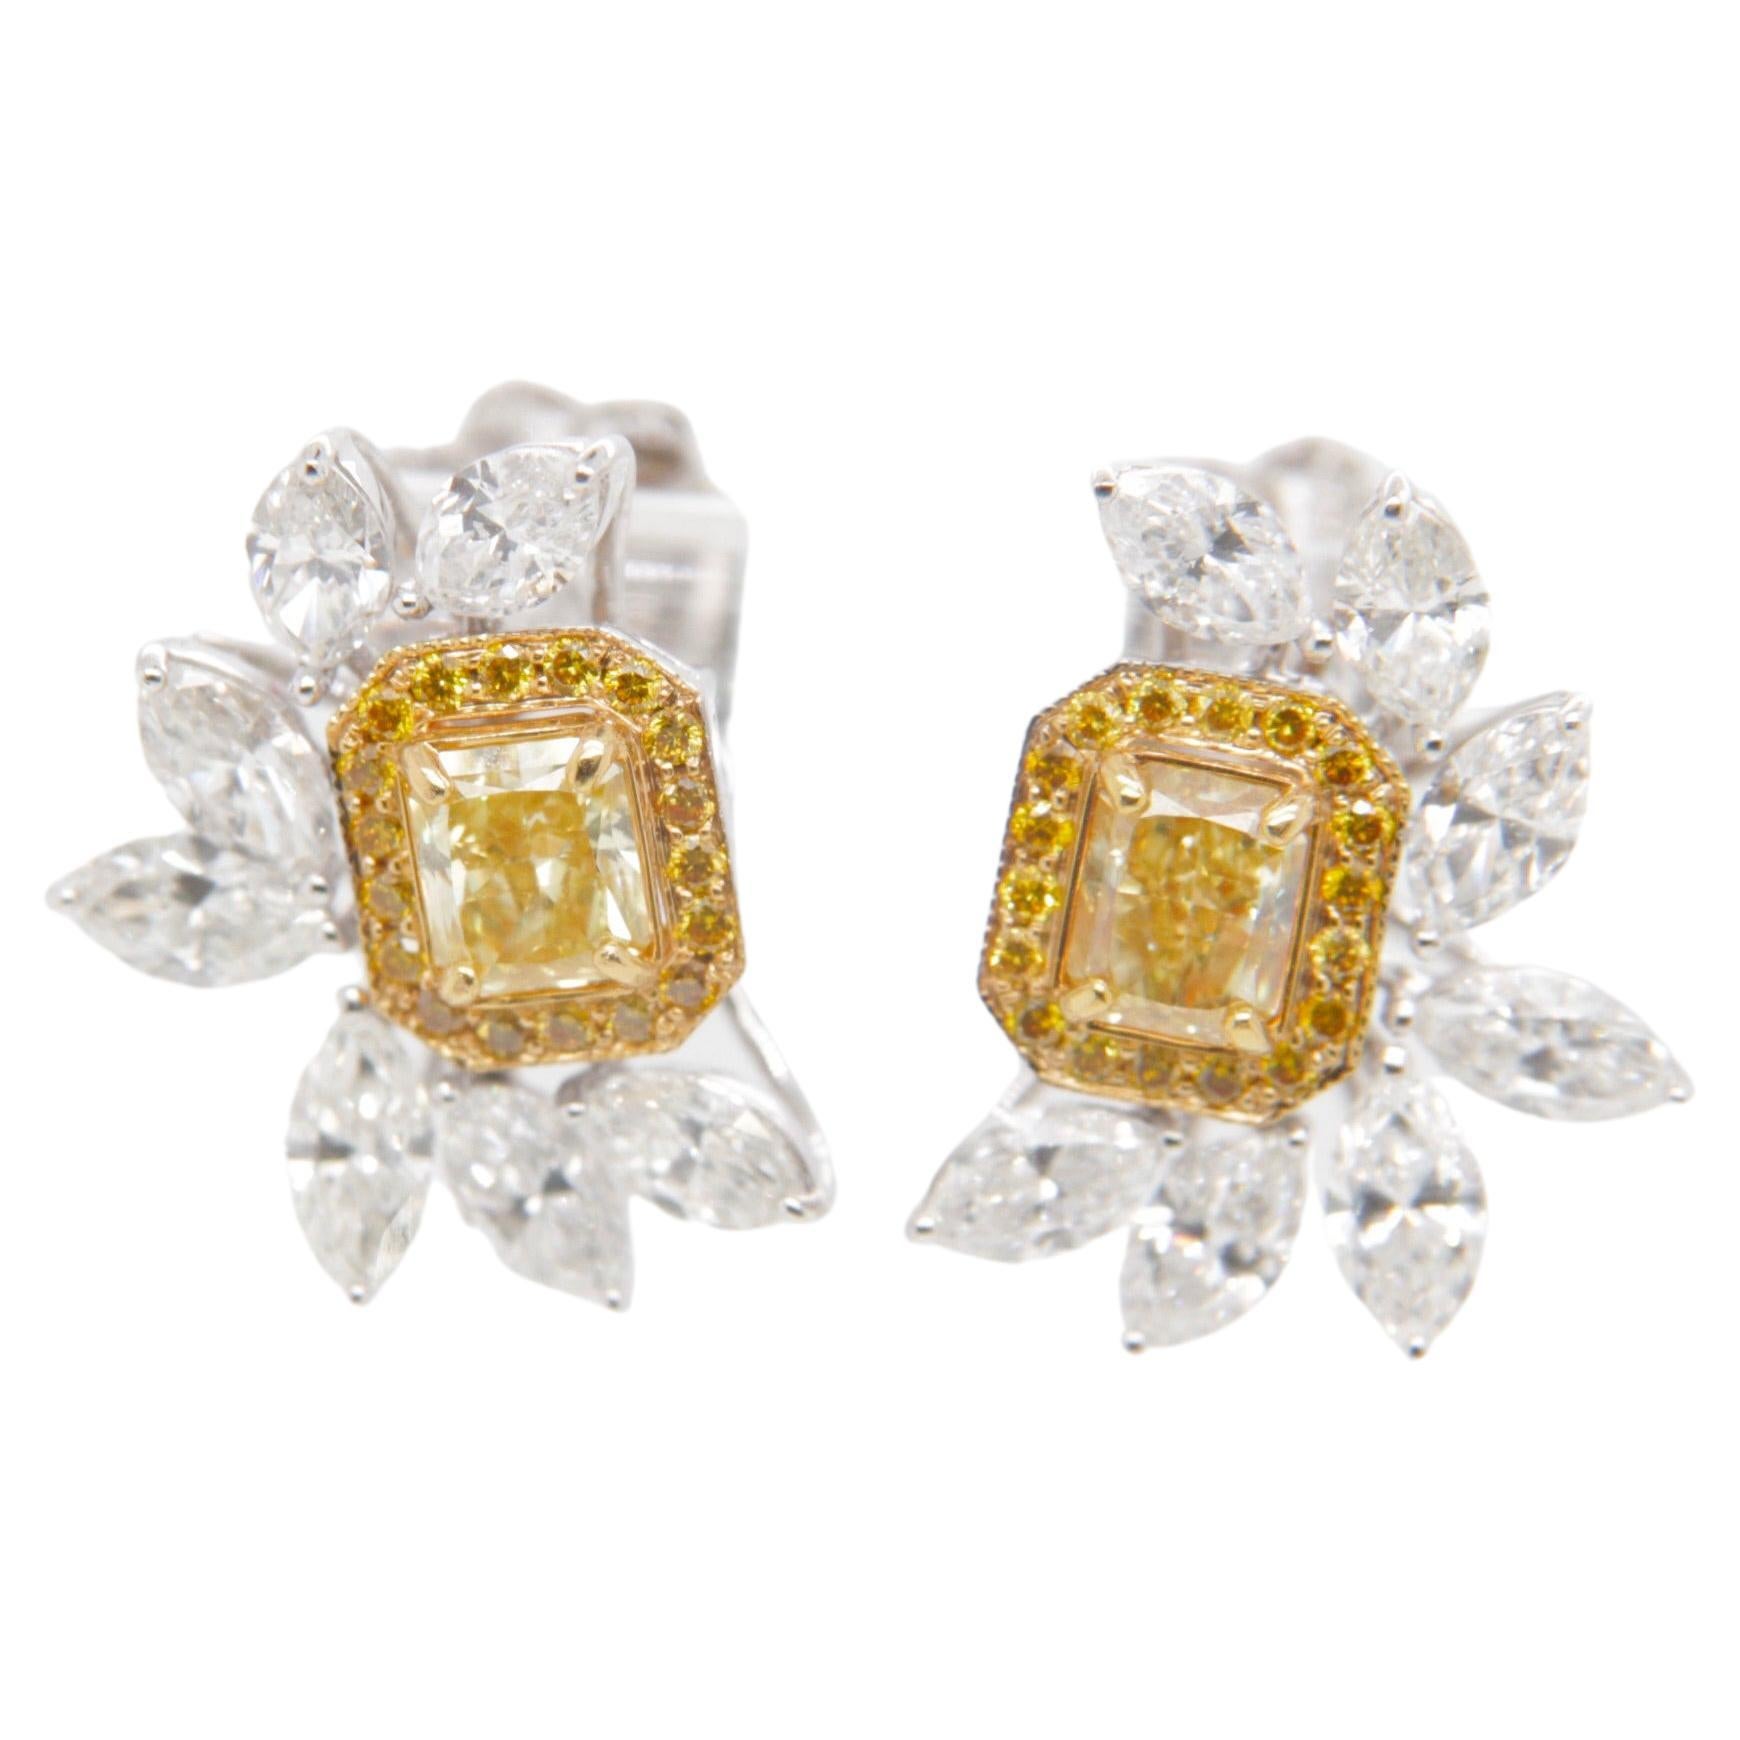 GIA Certified 1.10 Carat Fancy Intense Yellow Diamond Studs in 18 Karat Gold